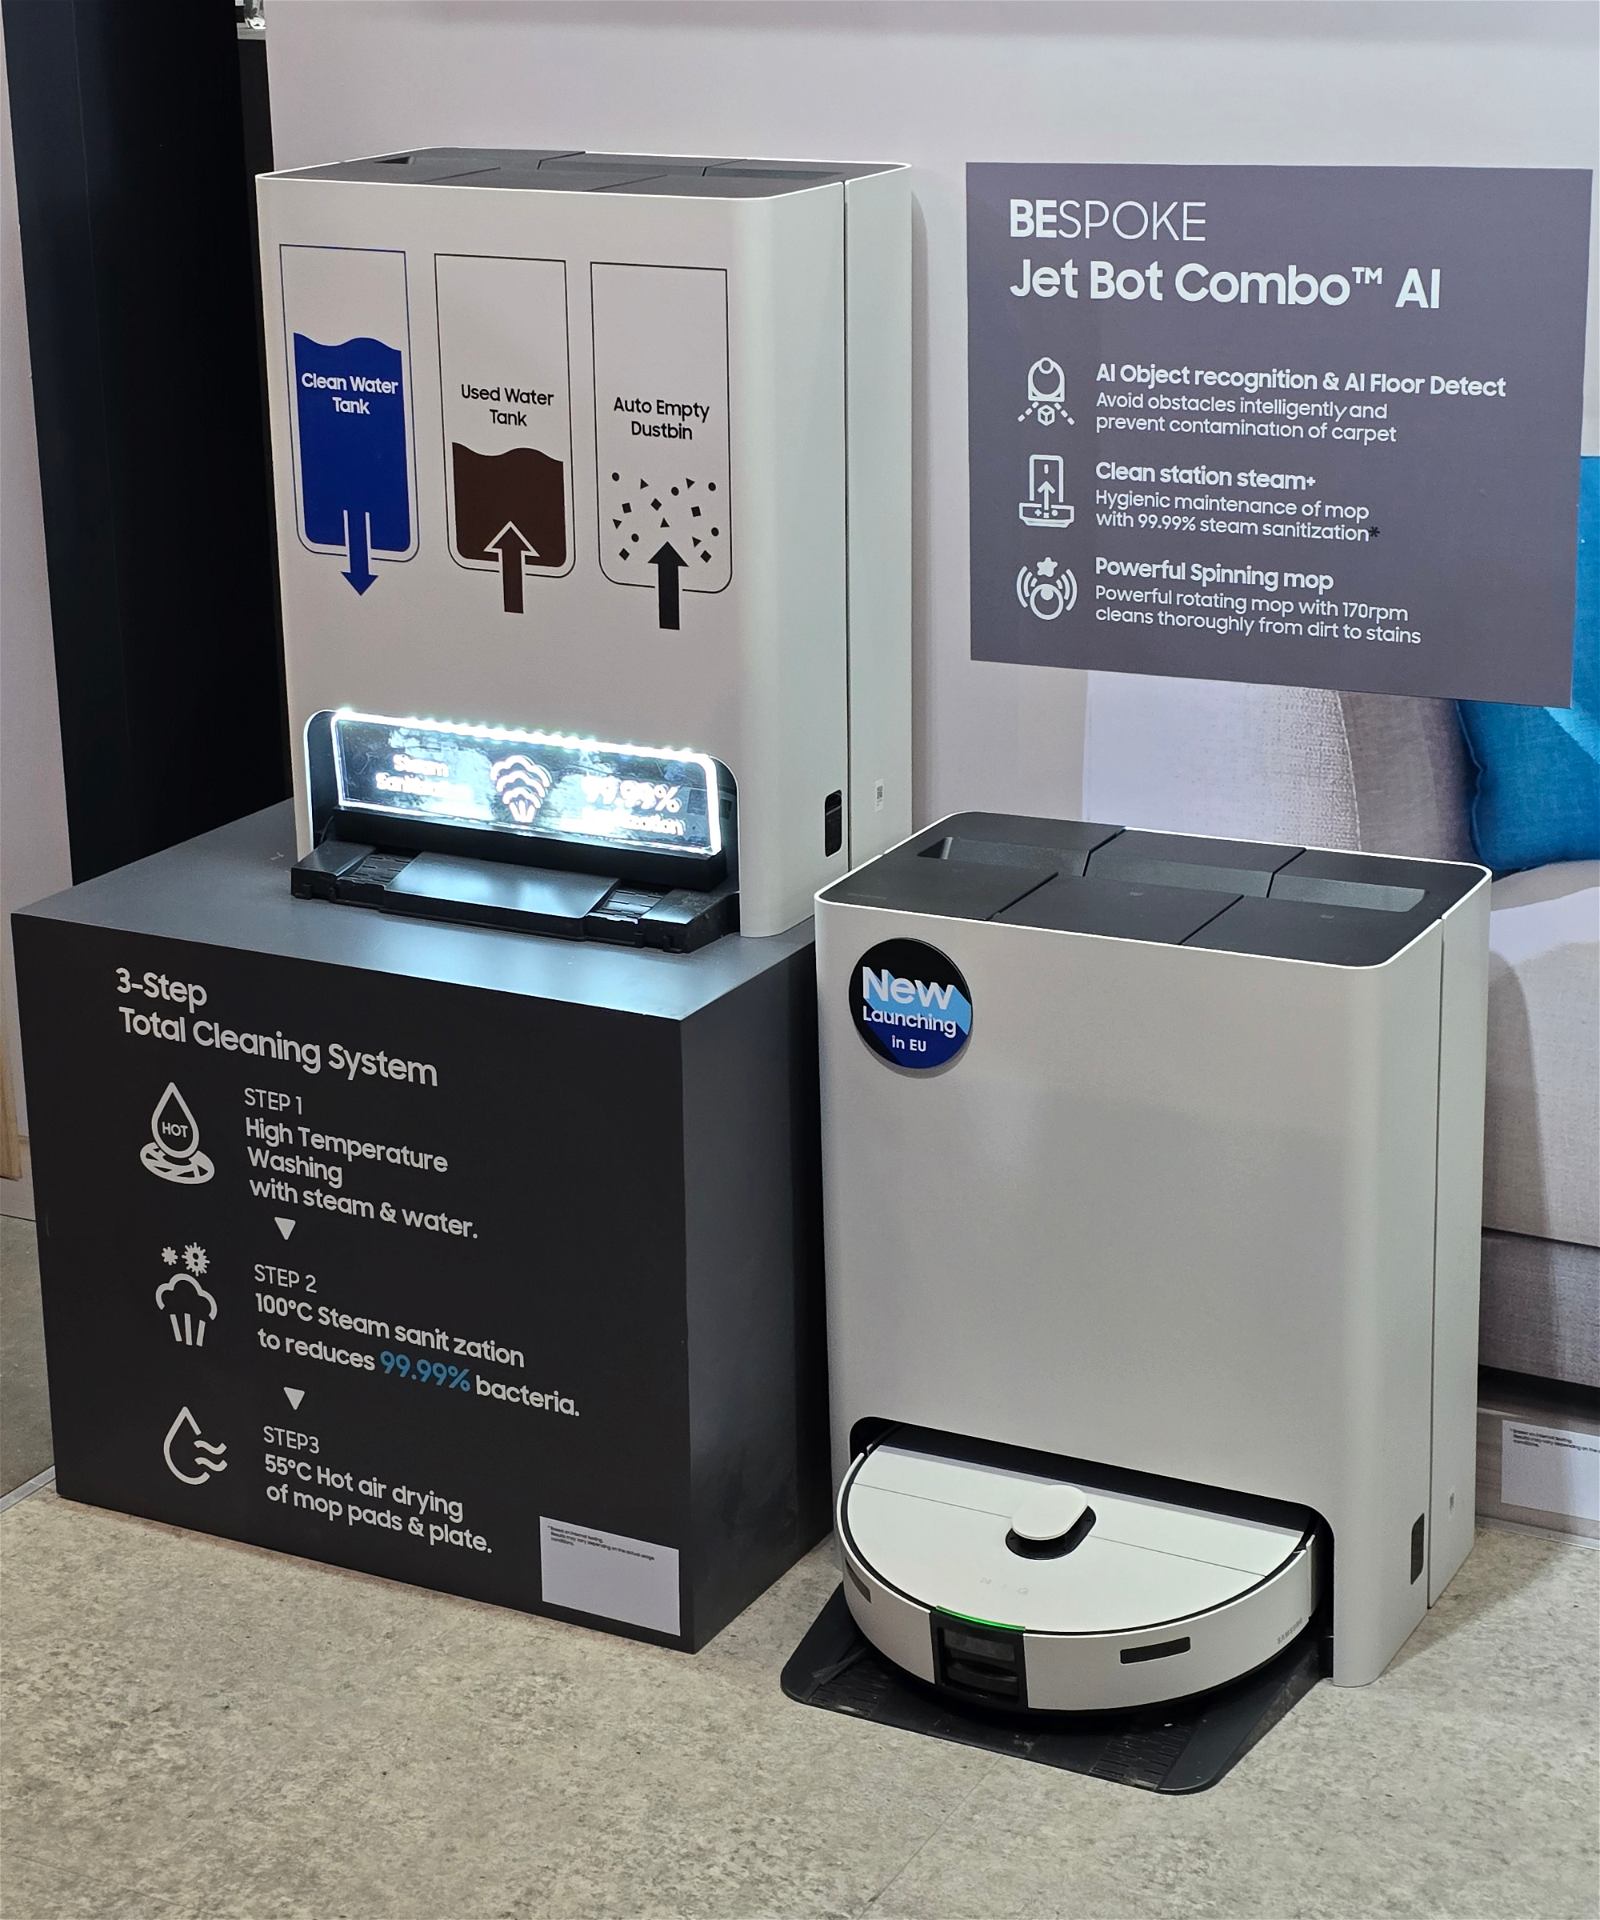 BESPOKE Jet Bot Combo AI, el nuevo robot aspirador y mopa de Samsung